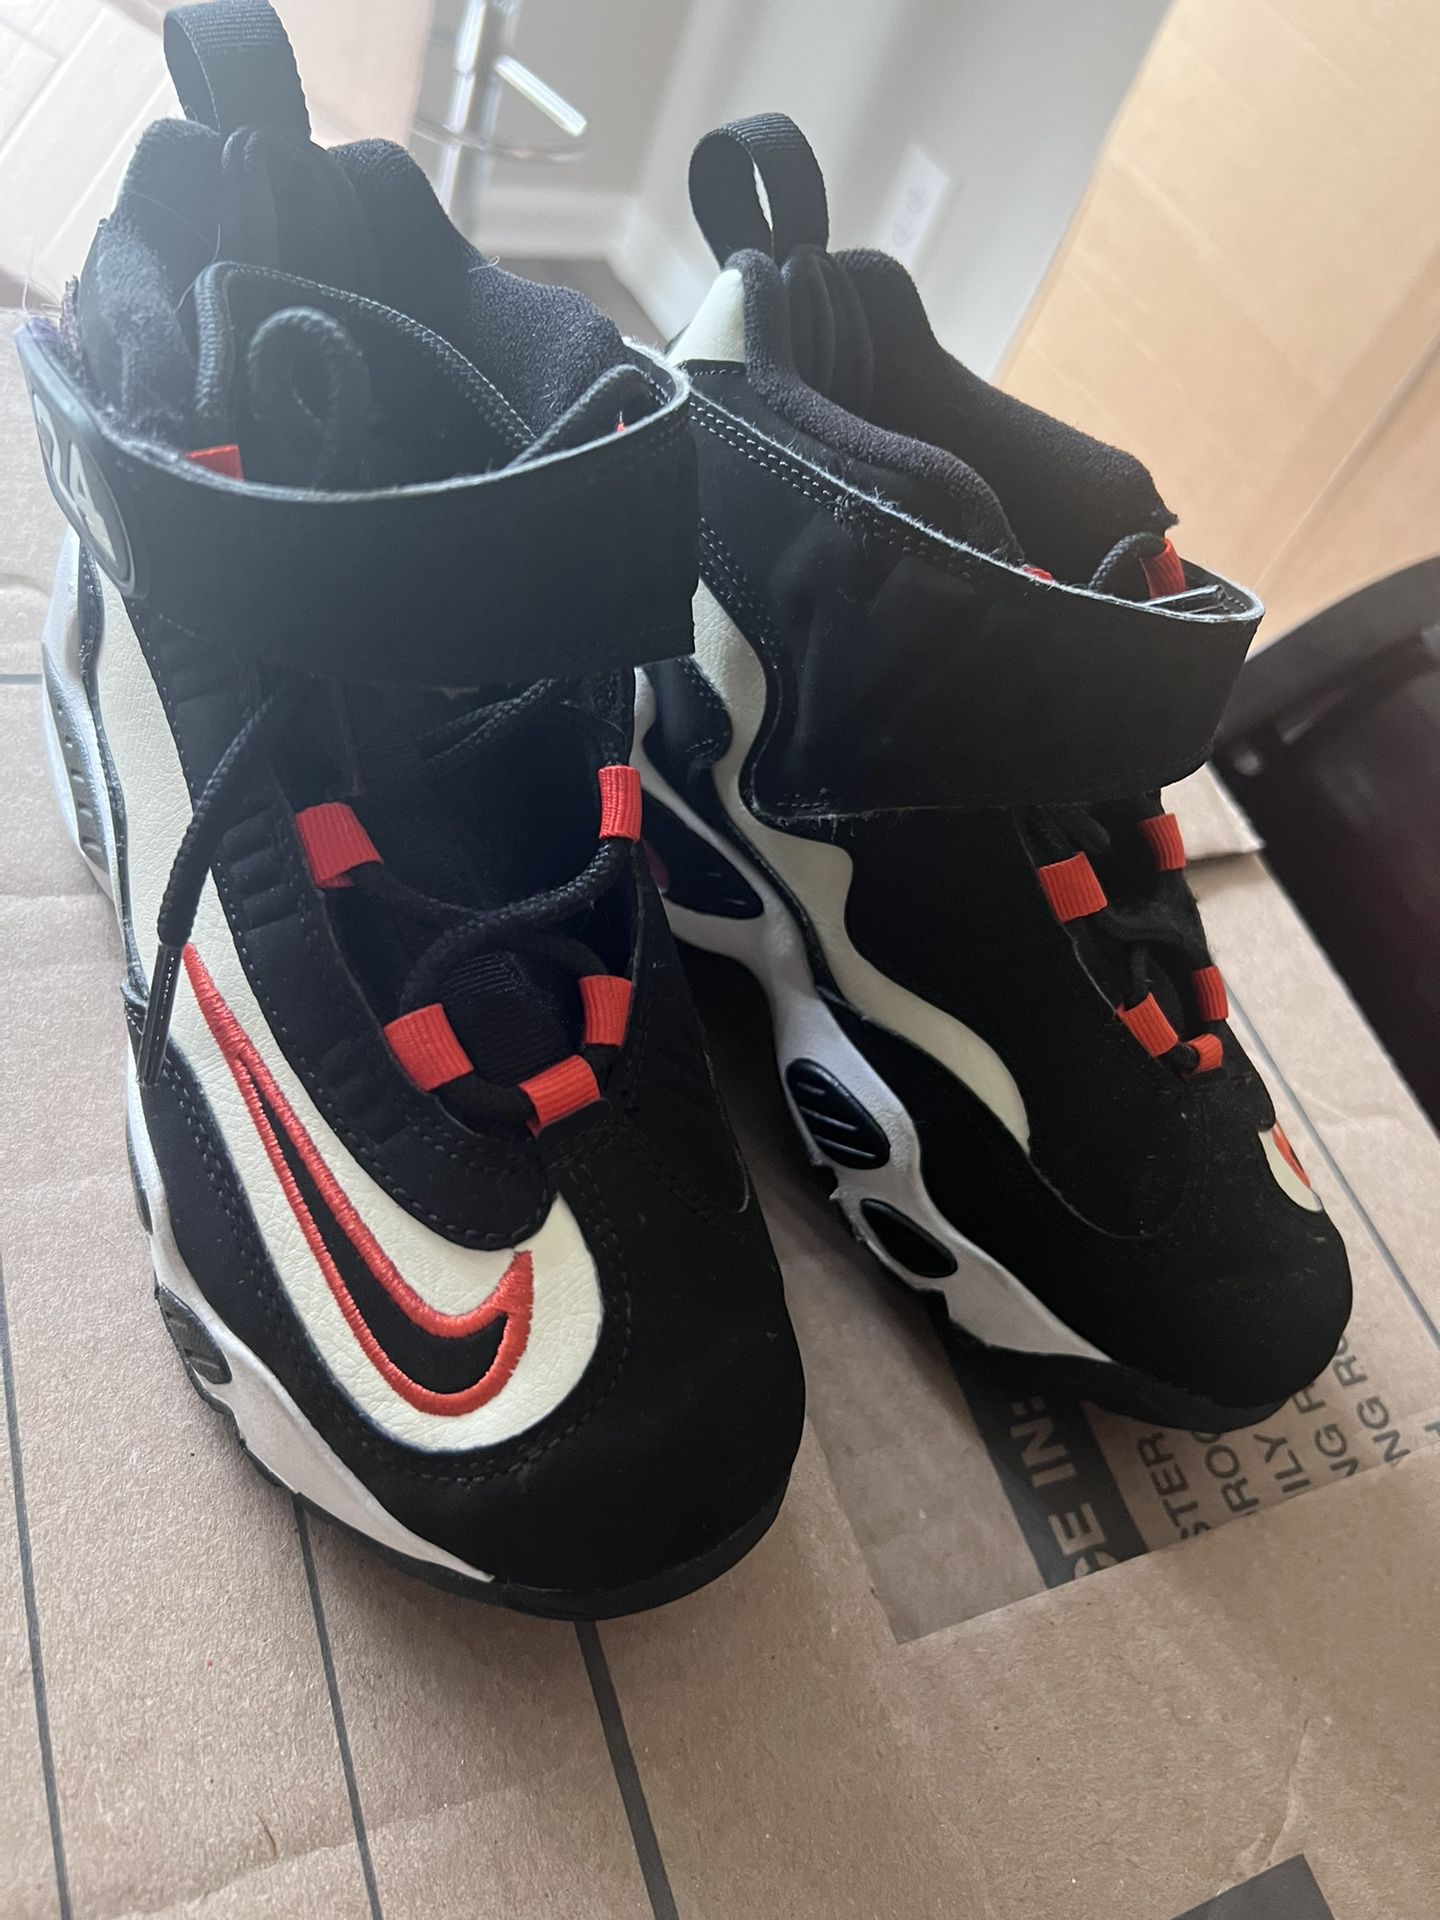 Nike Boy Shoes Size 2Y